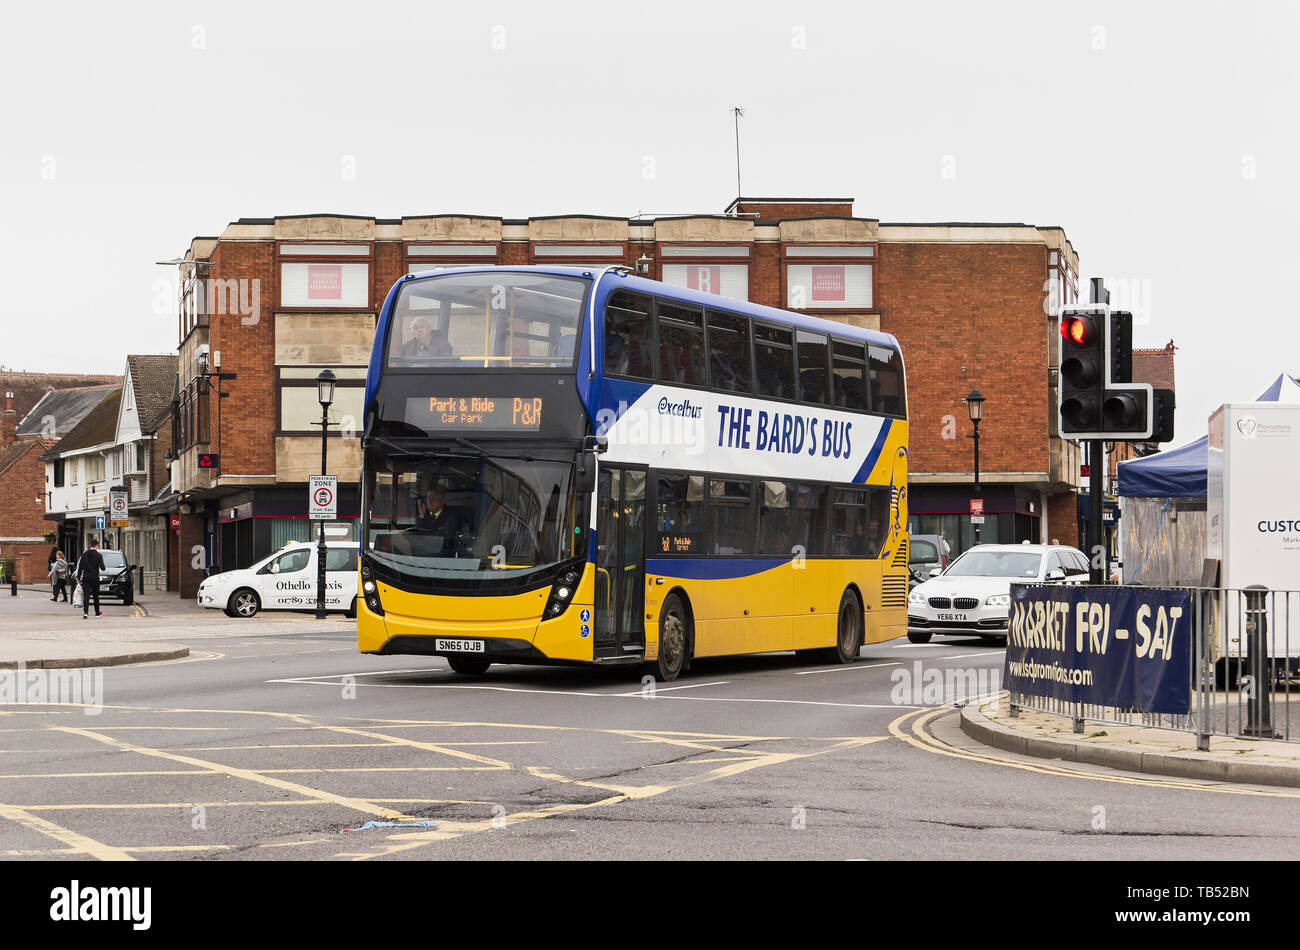 Le Bus du Barde, transport à la Stratford upon Avon, Royaume-Uni Banque D'Images